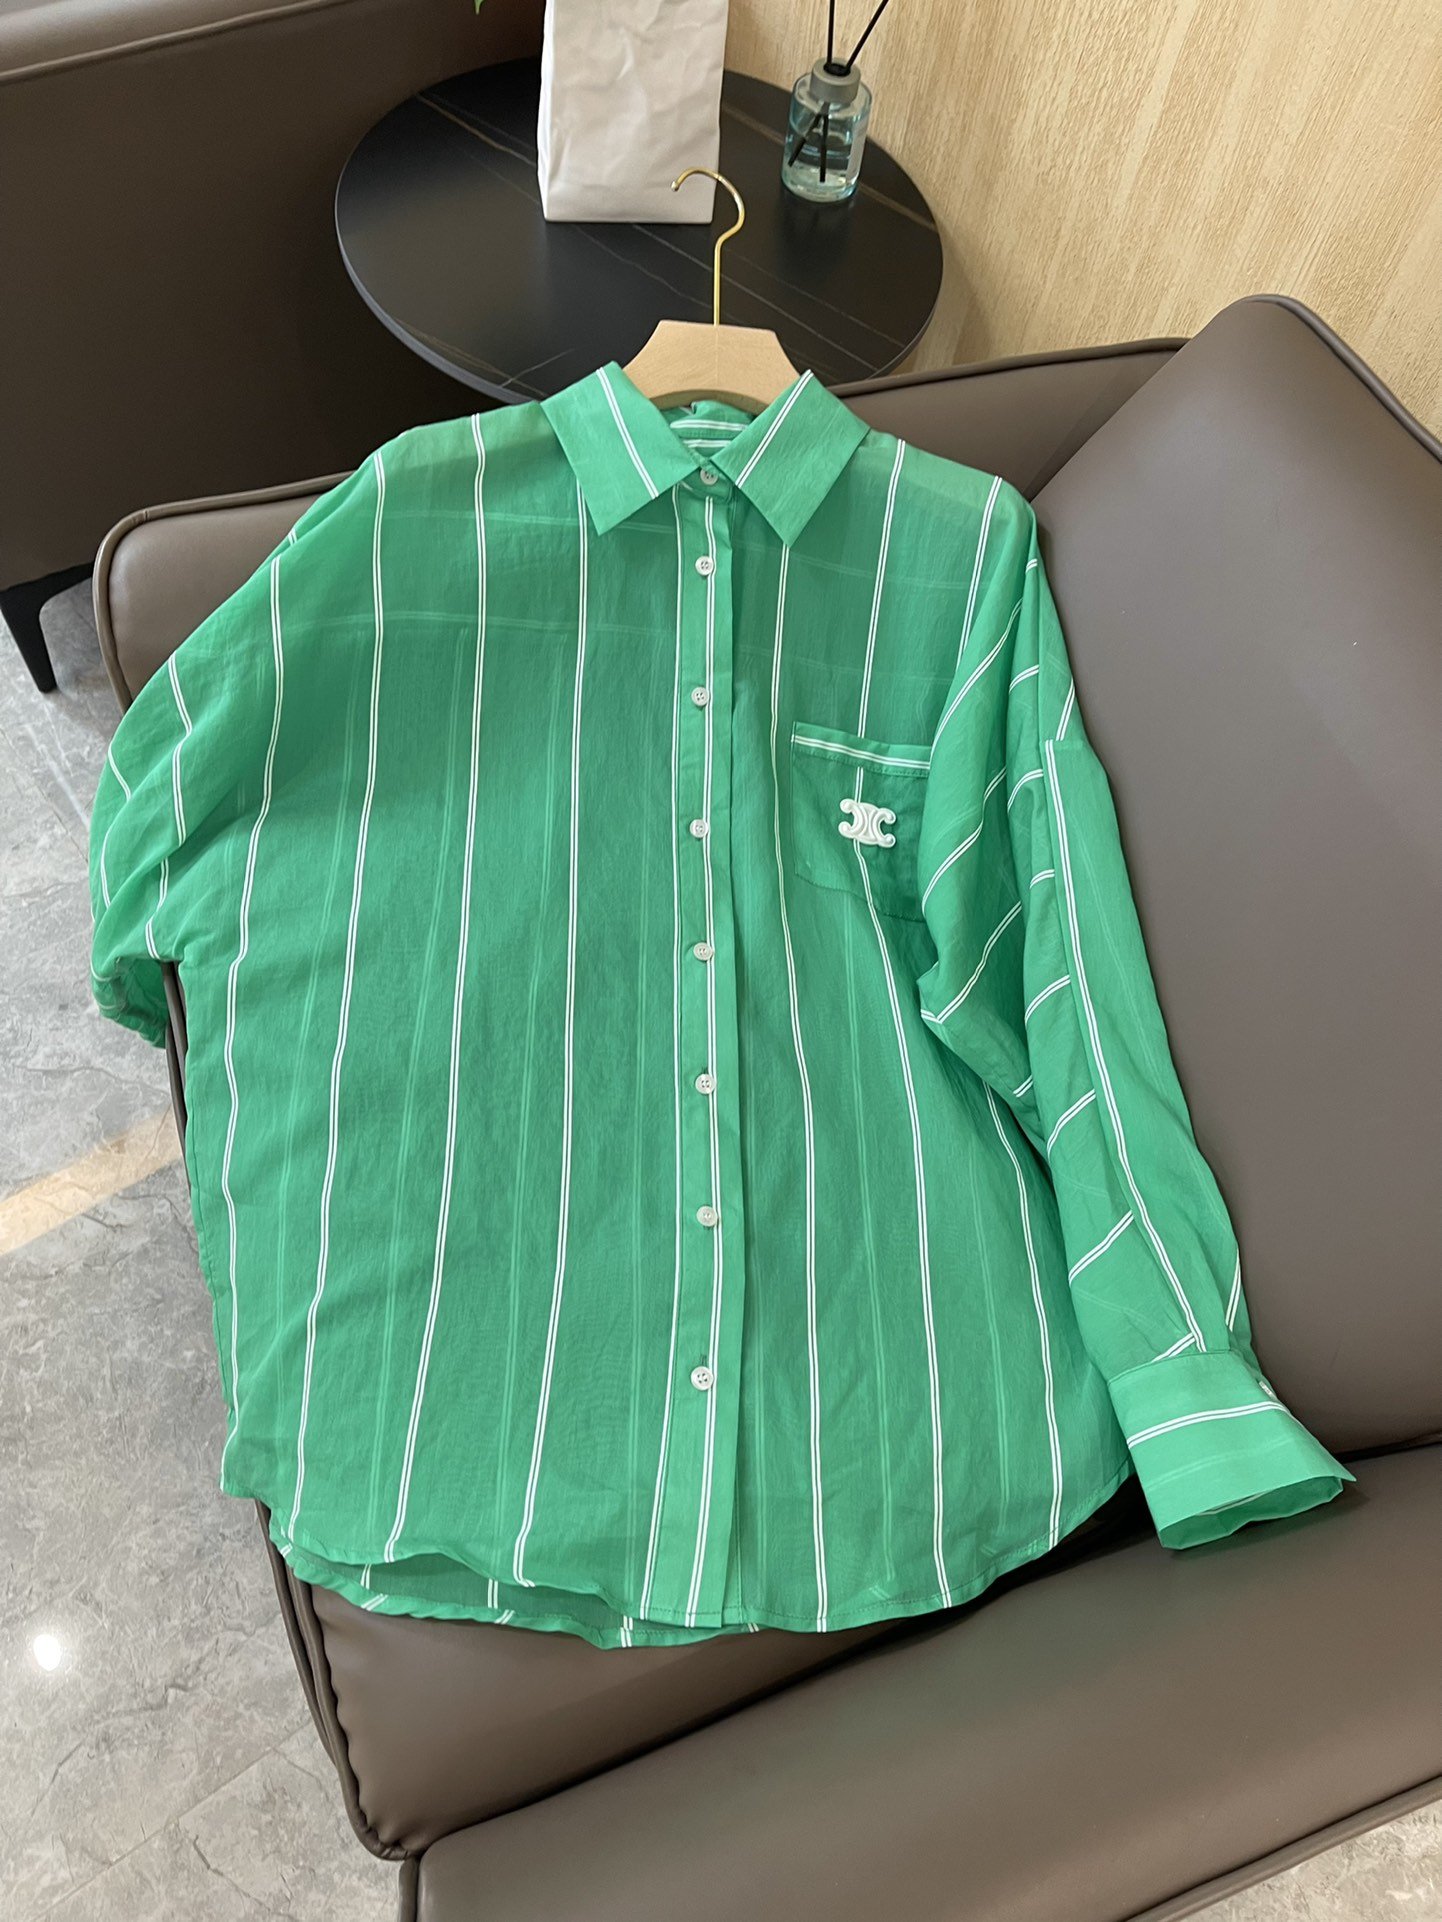 22A1esdjb#新款衬衫⚠️Pzzdqdceline 天丝棉 透明材质 条纹格子 长袖宽松 防晒衬衫 粉色 绿色 SML